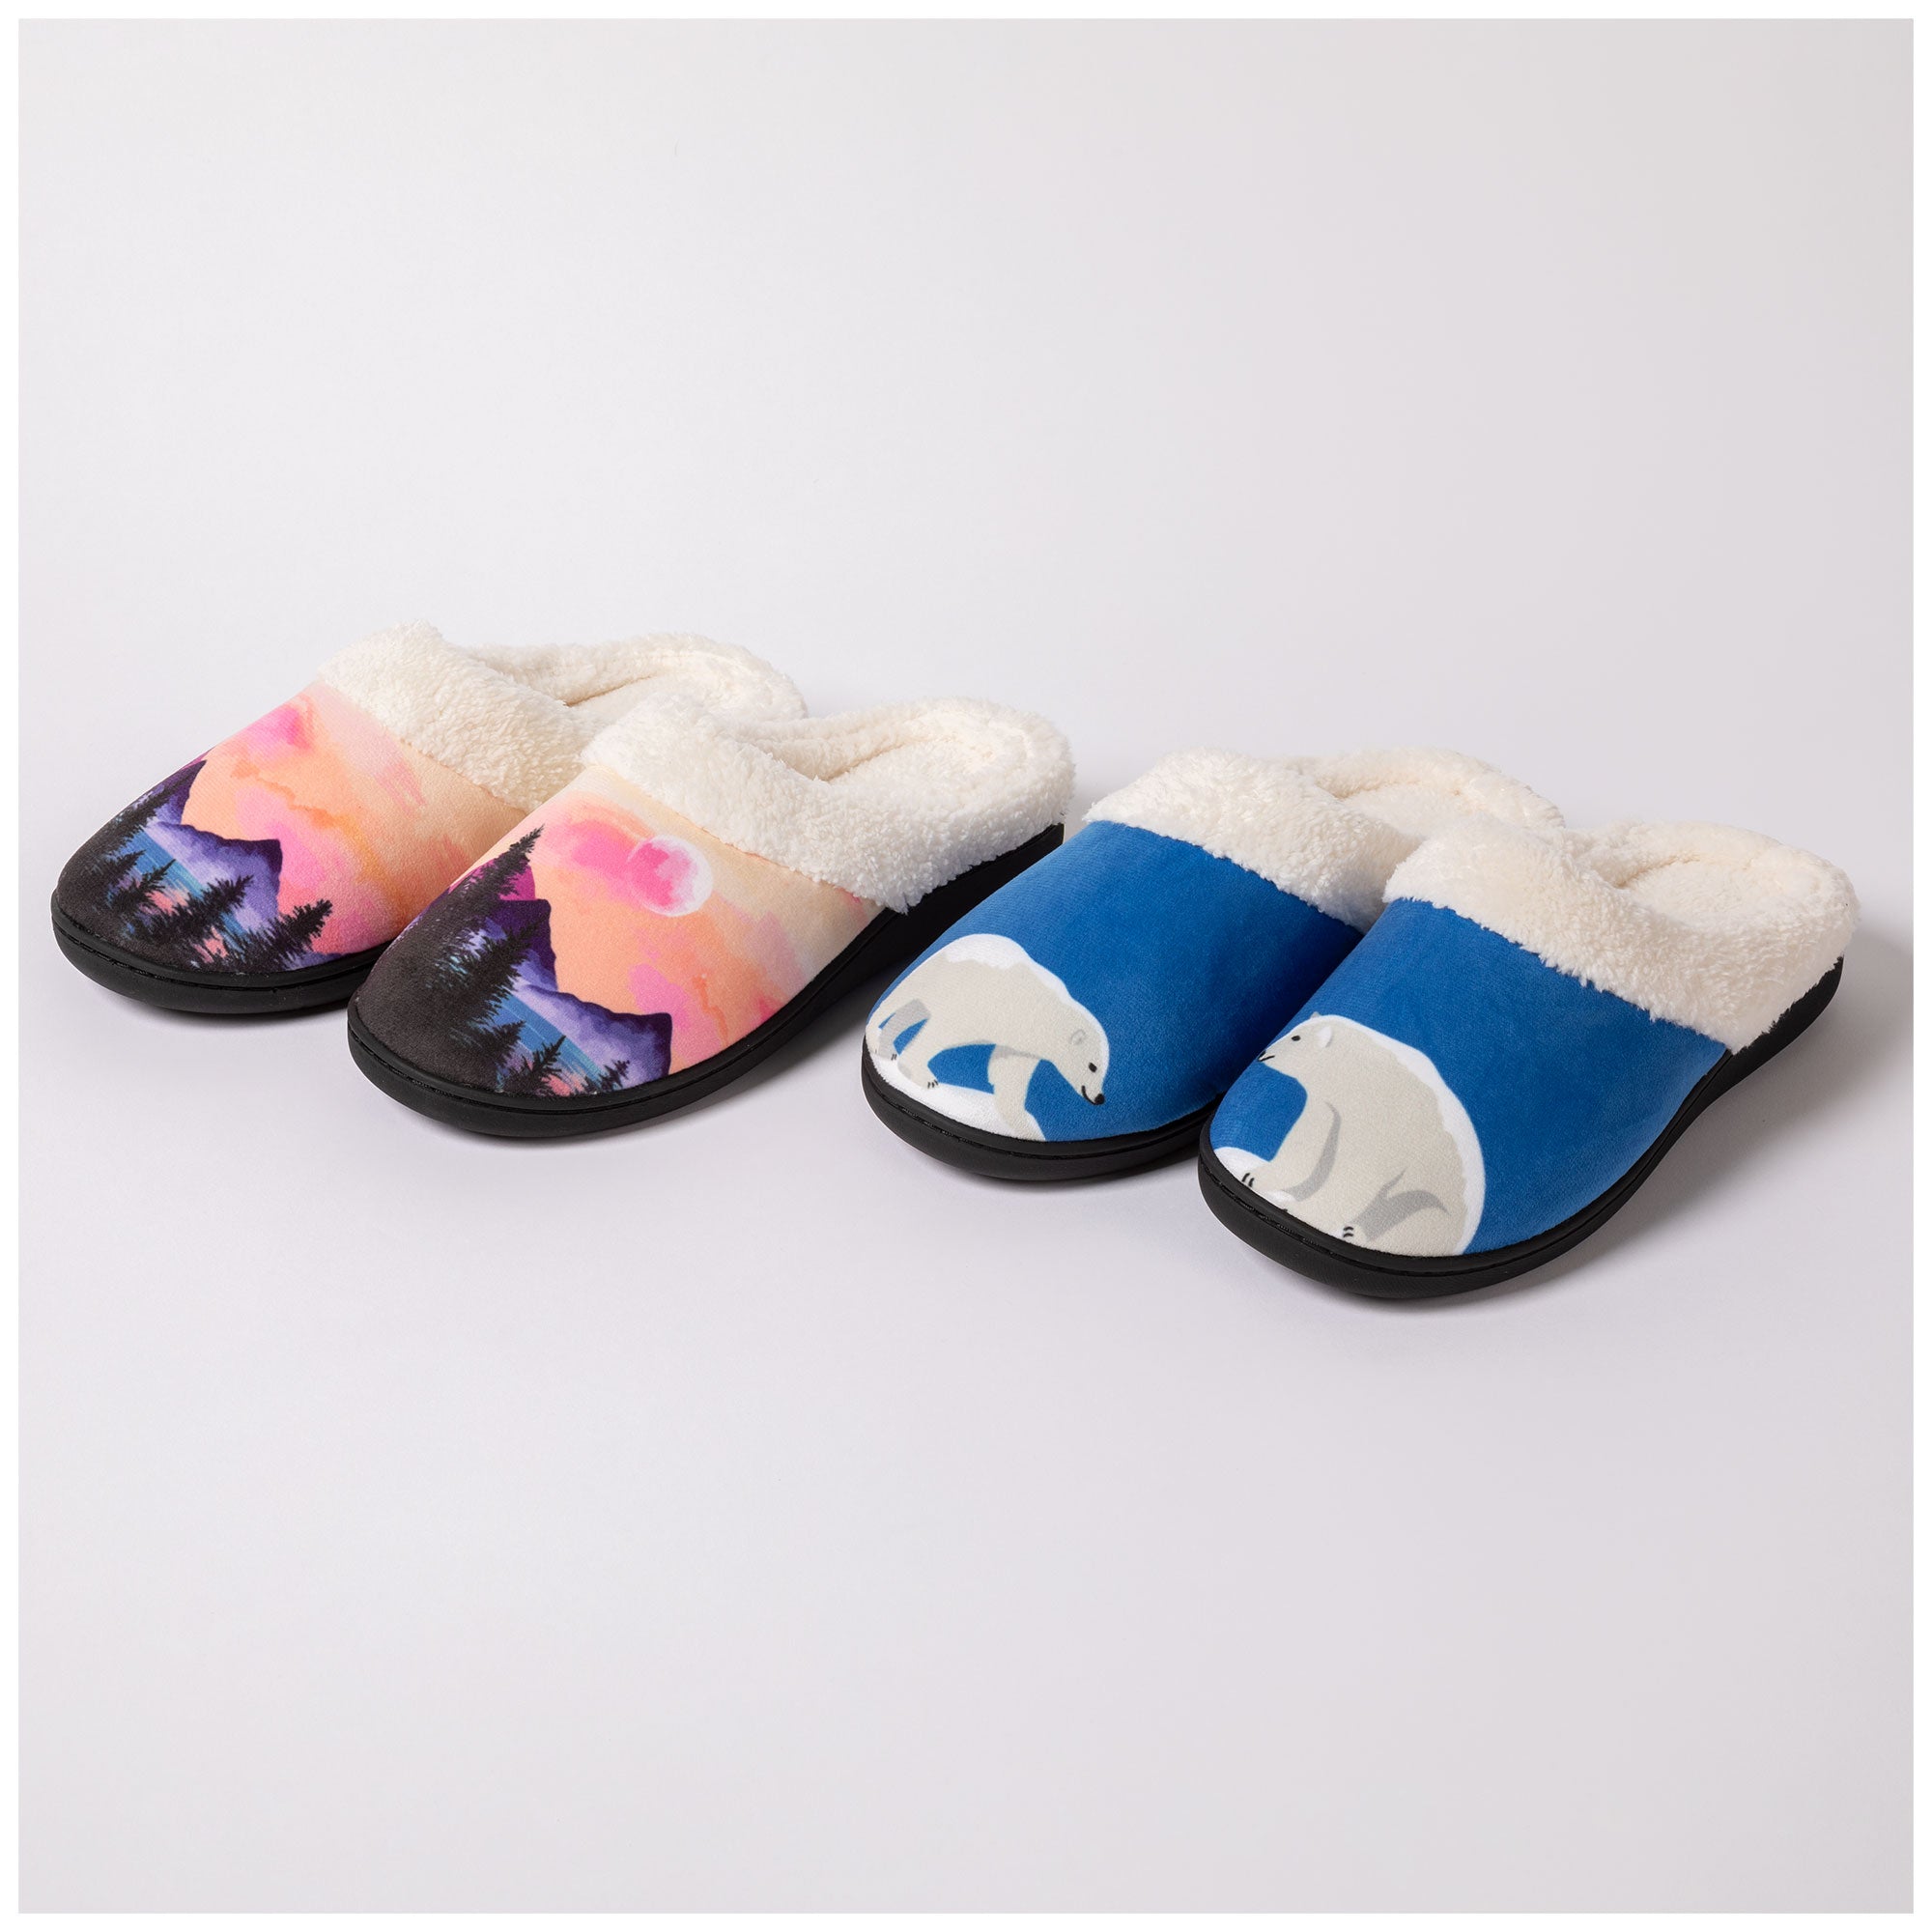 Dream Slide Slippers - Polar Bear - M